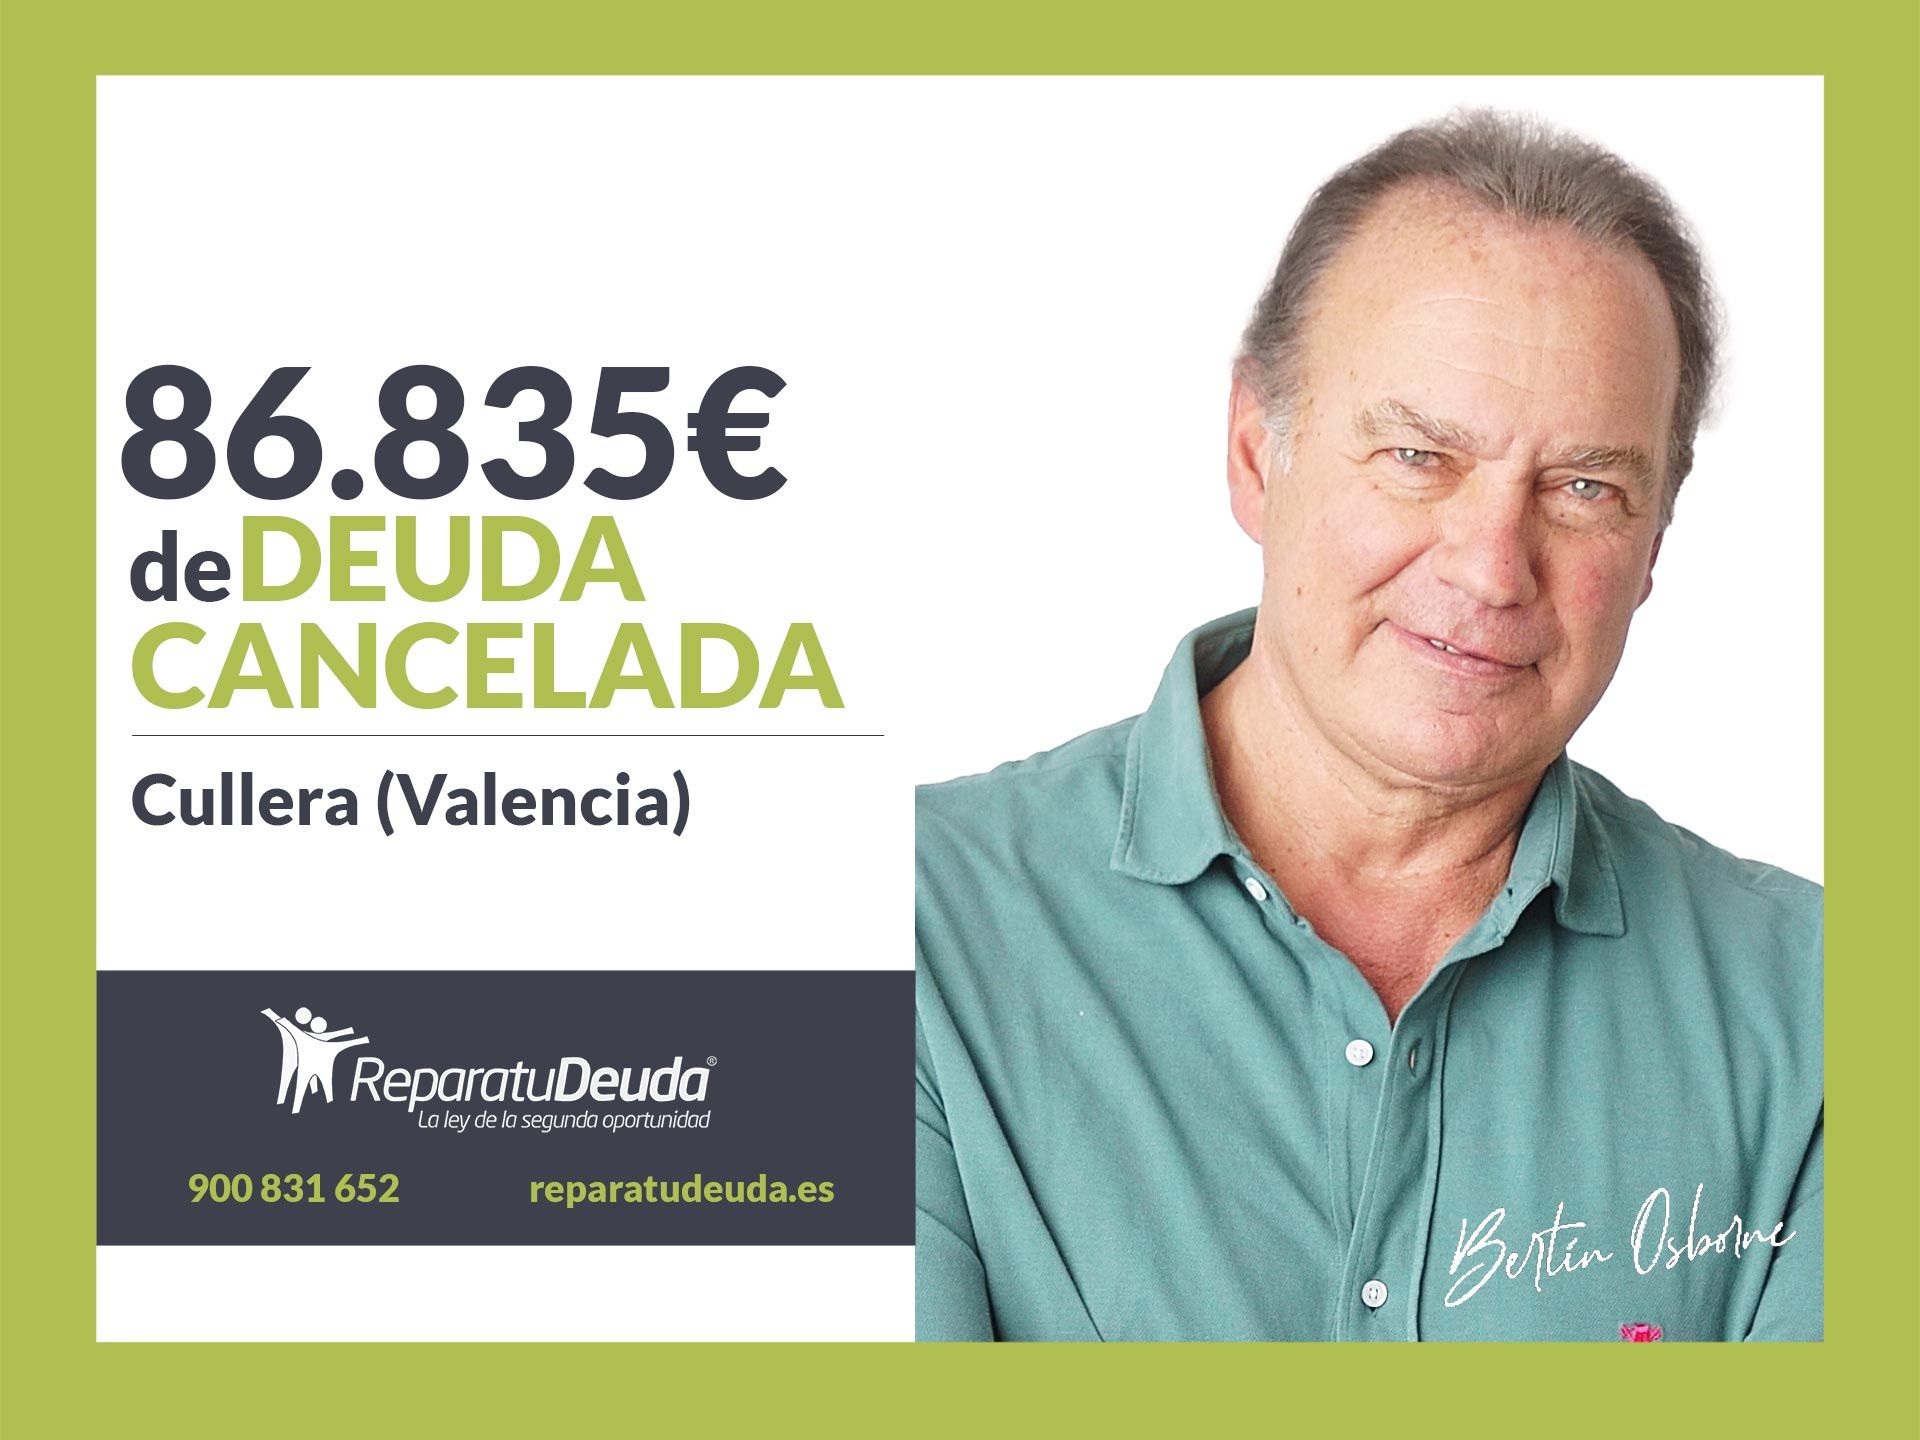 Repara tu Deuda Abogados cancela 86.835? en Cullera (Valencia) con la Ley de la Segunda Oportunidad